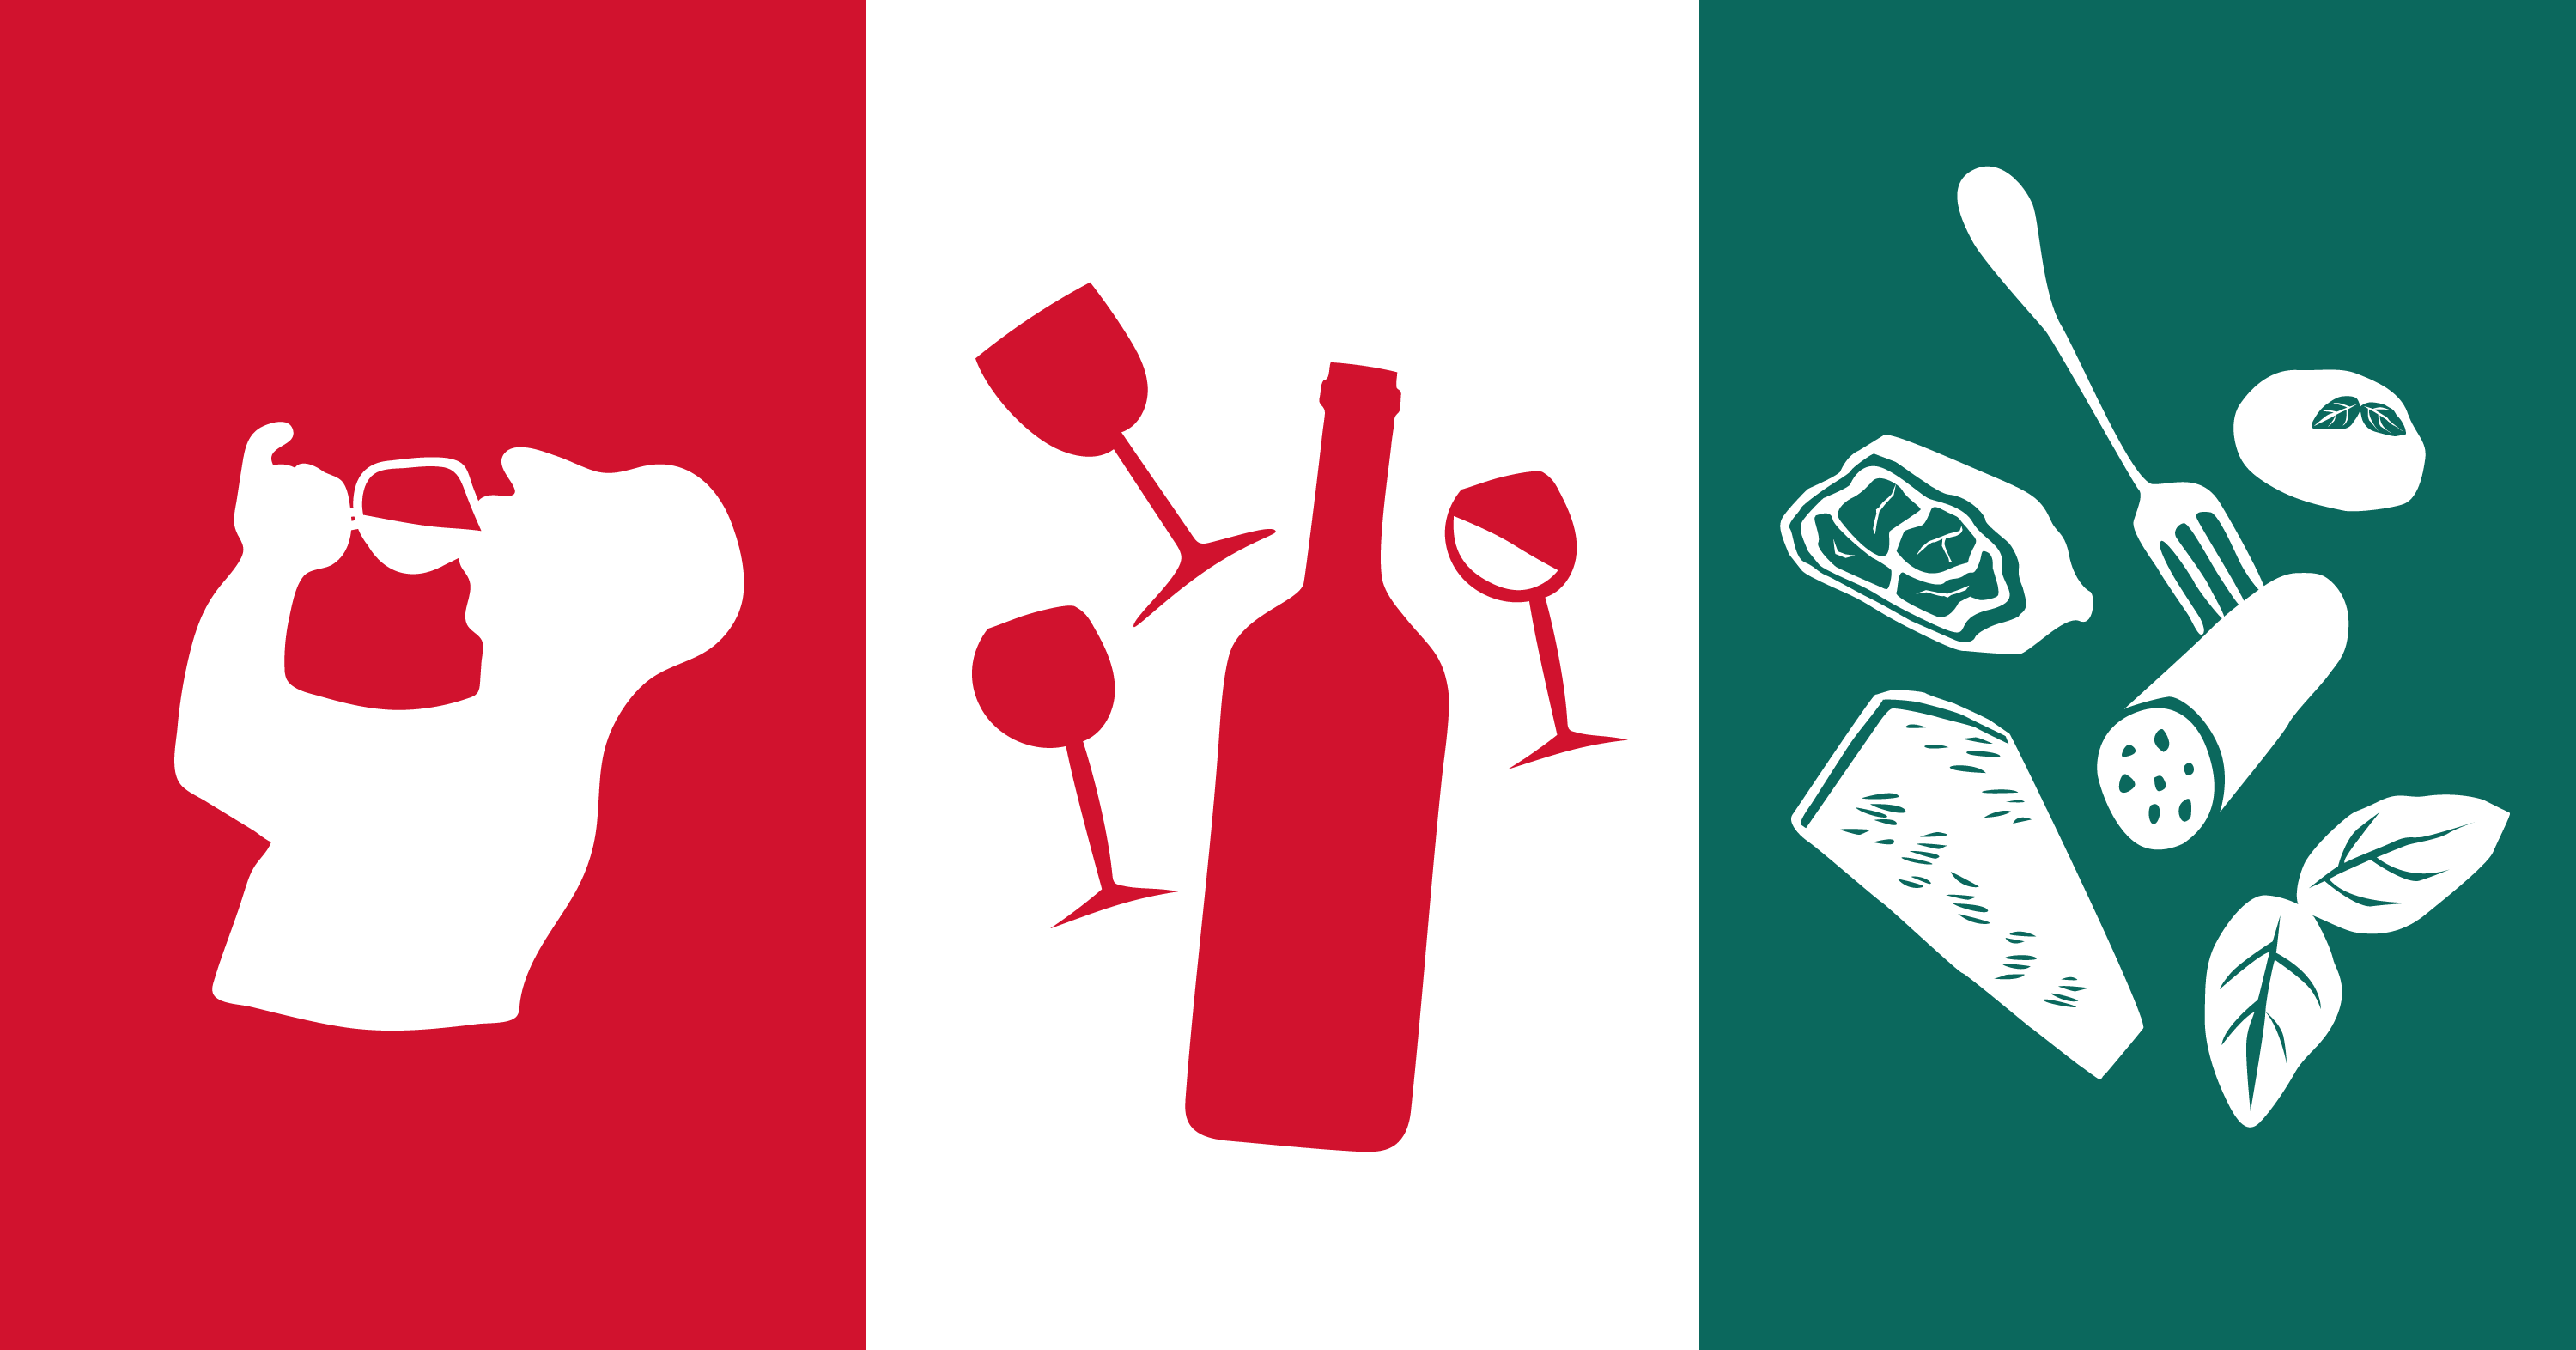 Drapeau italien rouge , neutre et vert avec un logo d'un homme qui boit , une bouteille de vin et de la charcuterie.